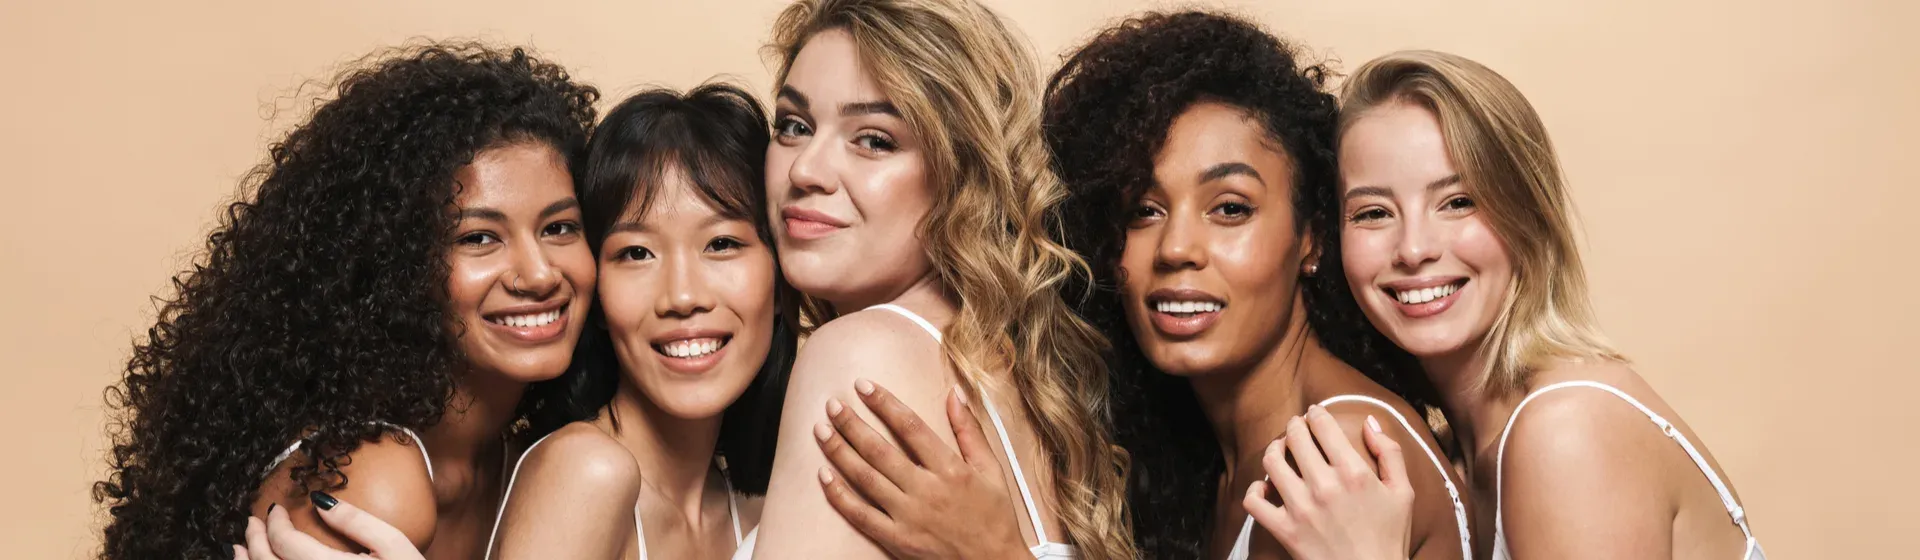 5 mulheres de cabelos e cores de pele diferentes, com camisas brancas, se abraçando e sorrindo em fundo bege 